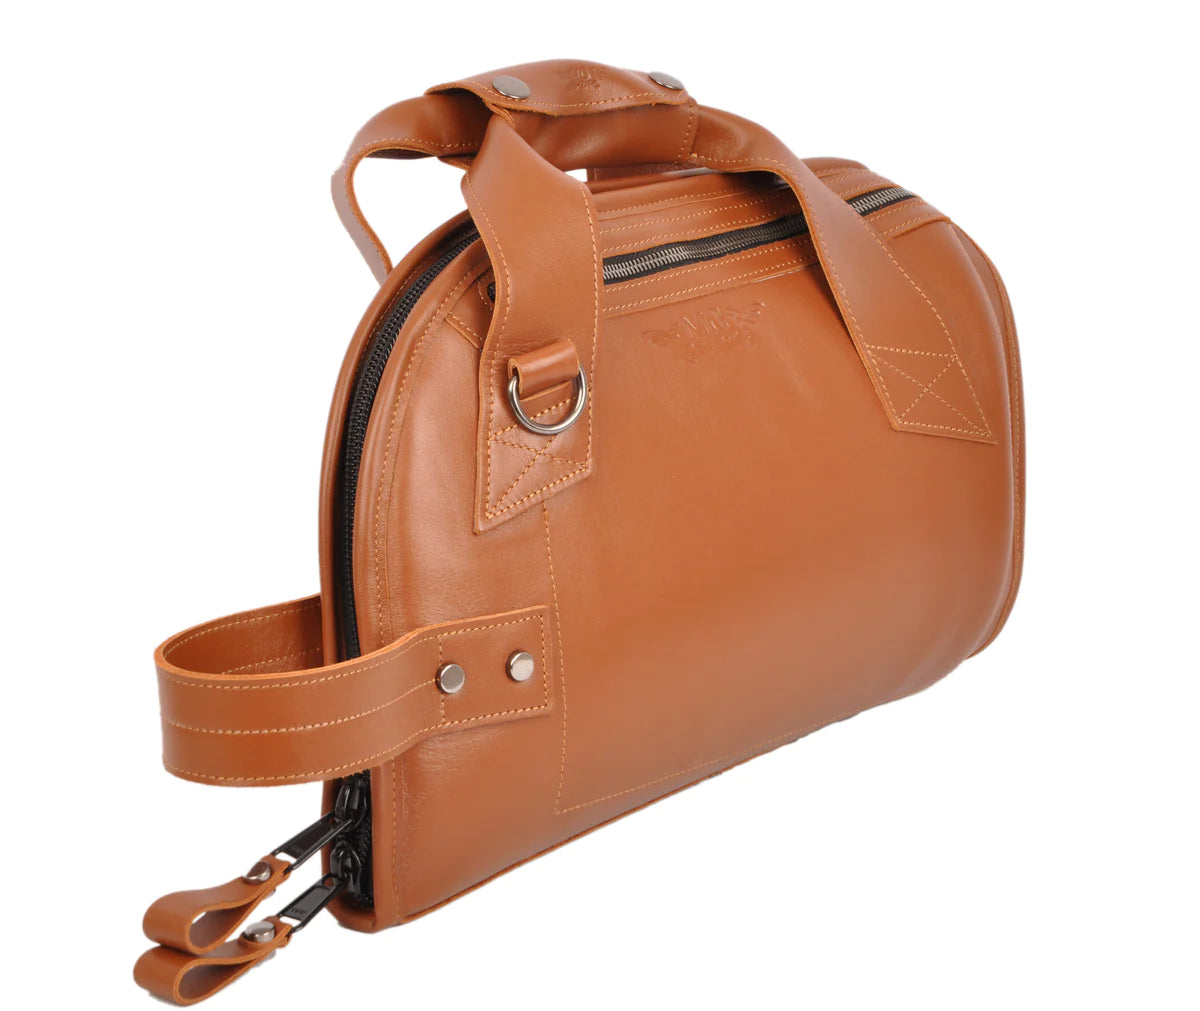 MG Leather Work - Pocket Trumpet Leather Gig Bag